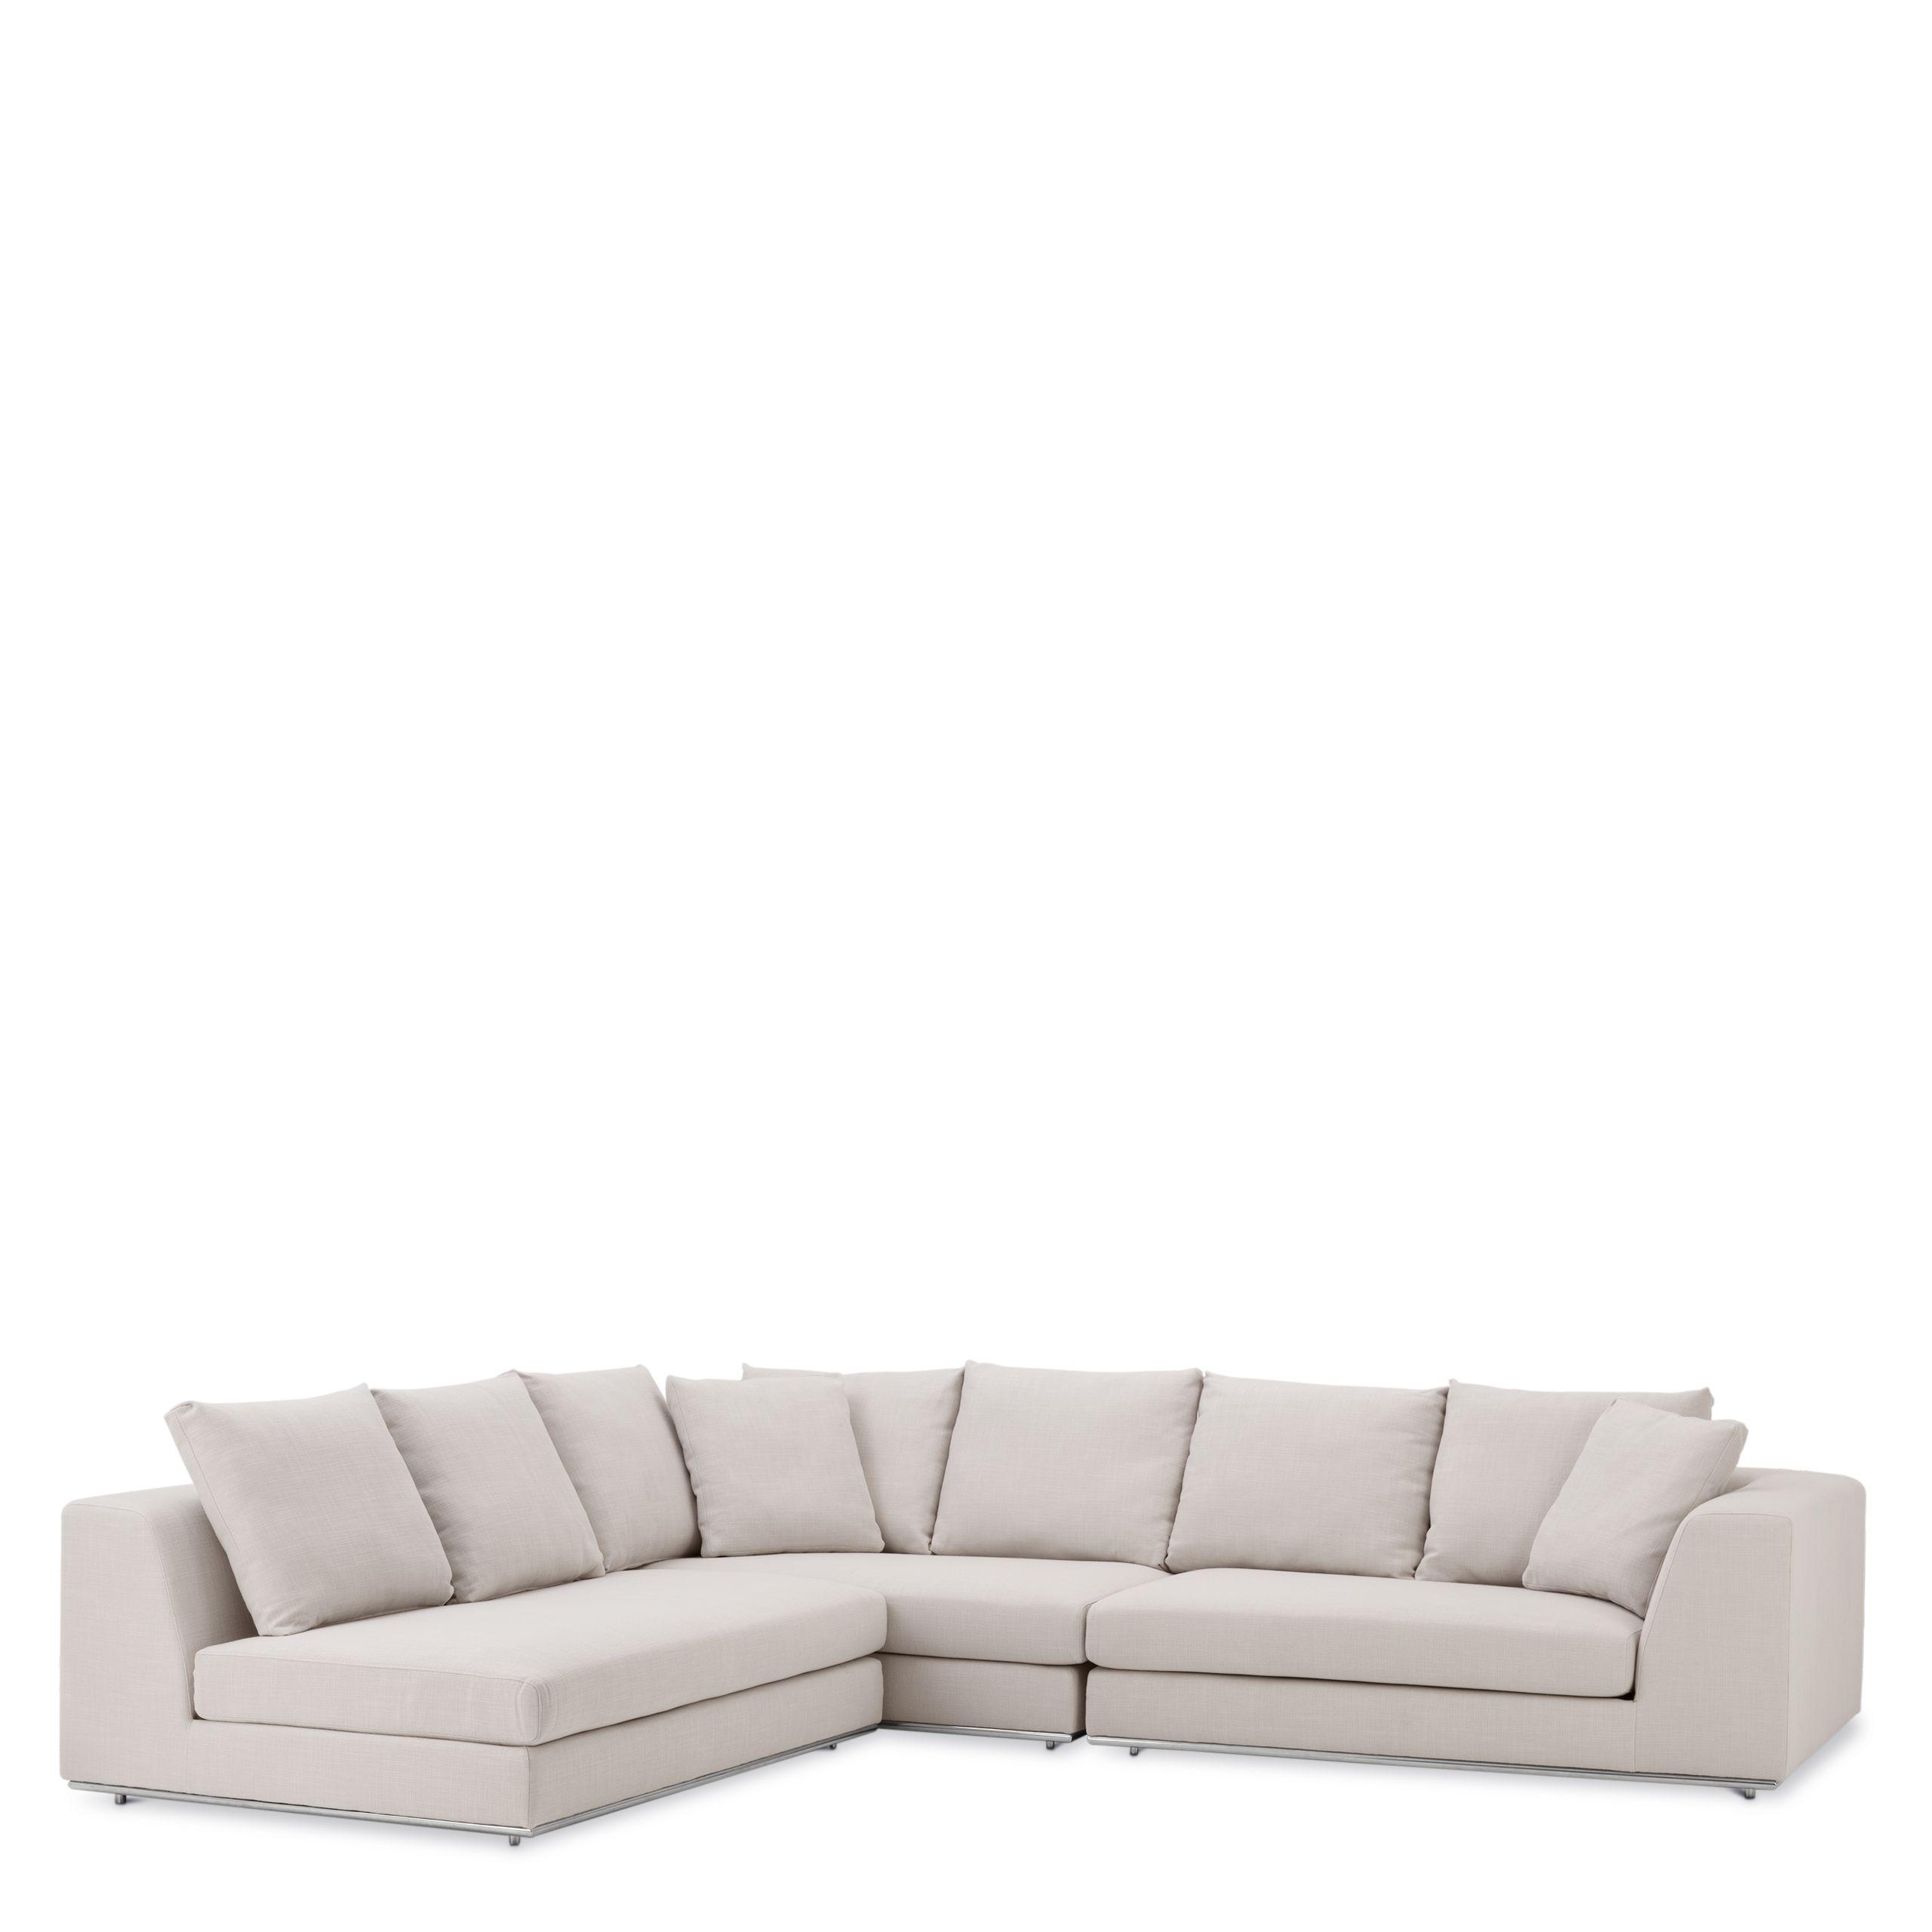 Купить Угловой диван Sofa Richard Gere в интернет-магазине roooms.ru